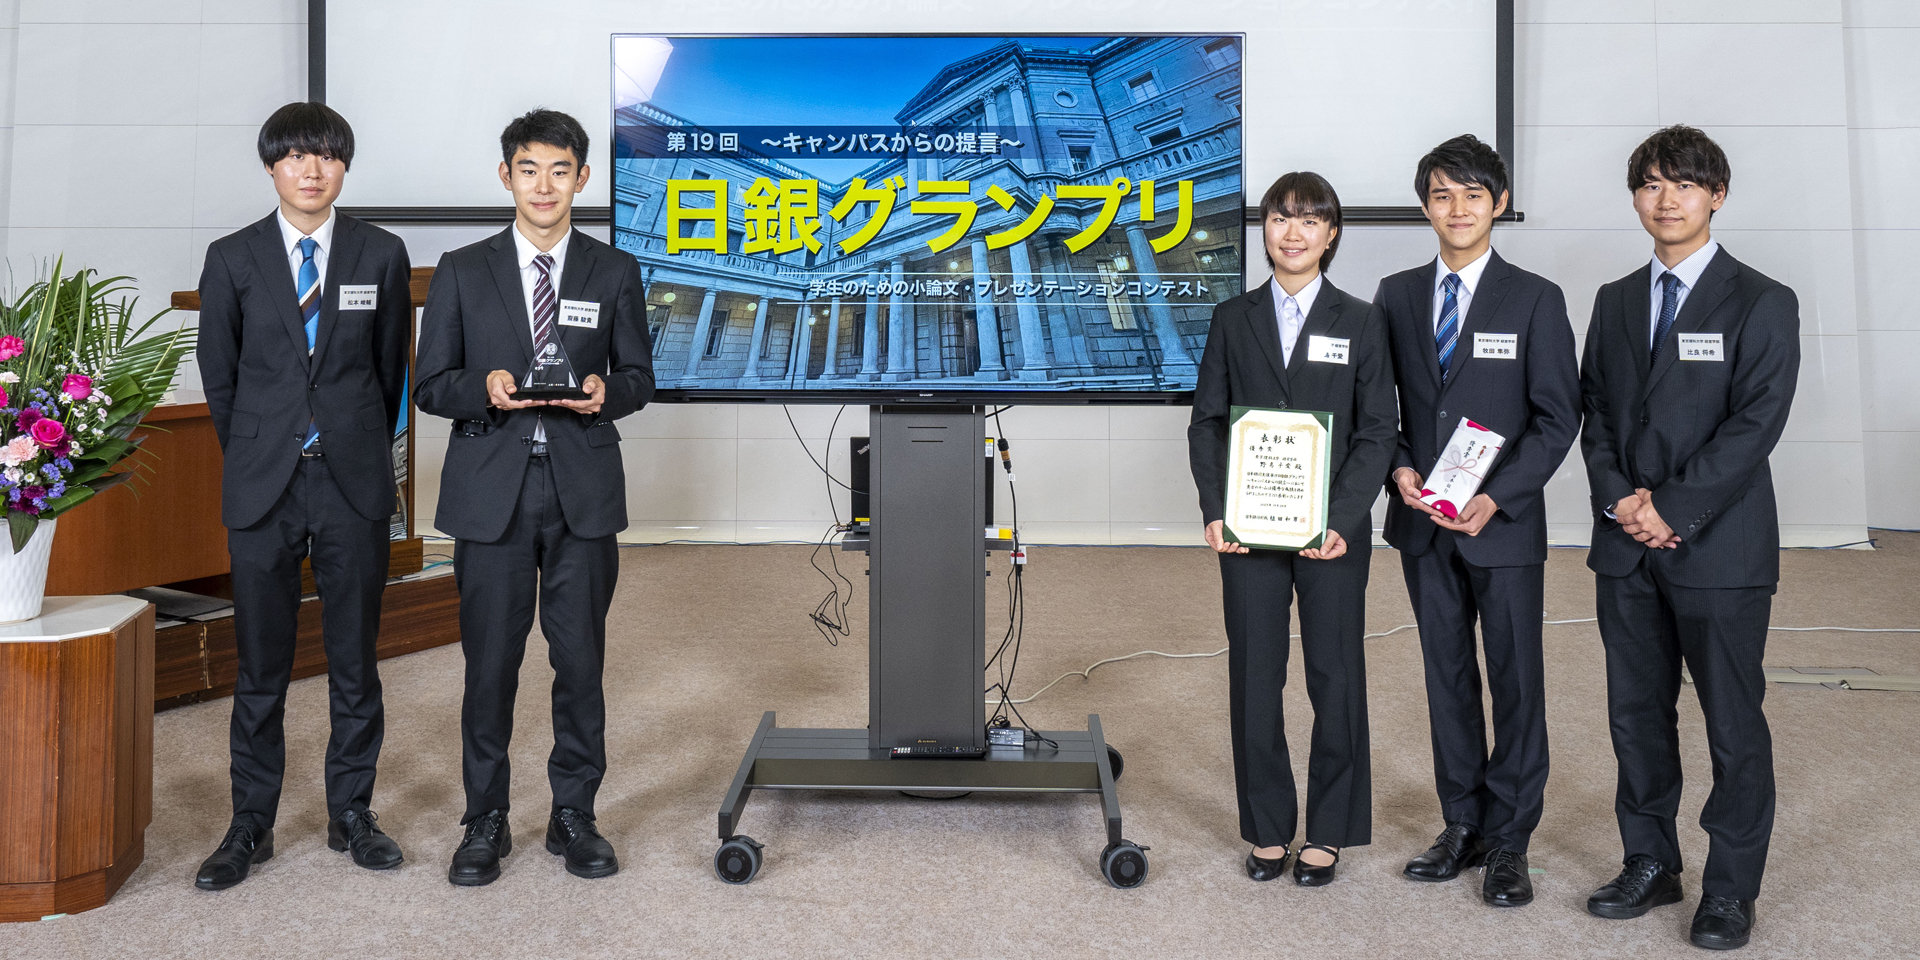 東京理科大学チームの学生5人が、横一列に起立して記念撮影している様子